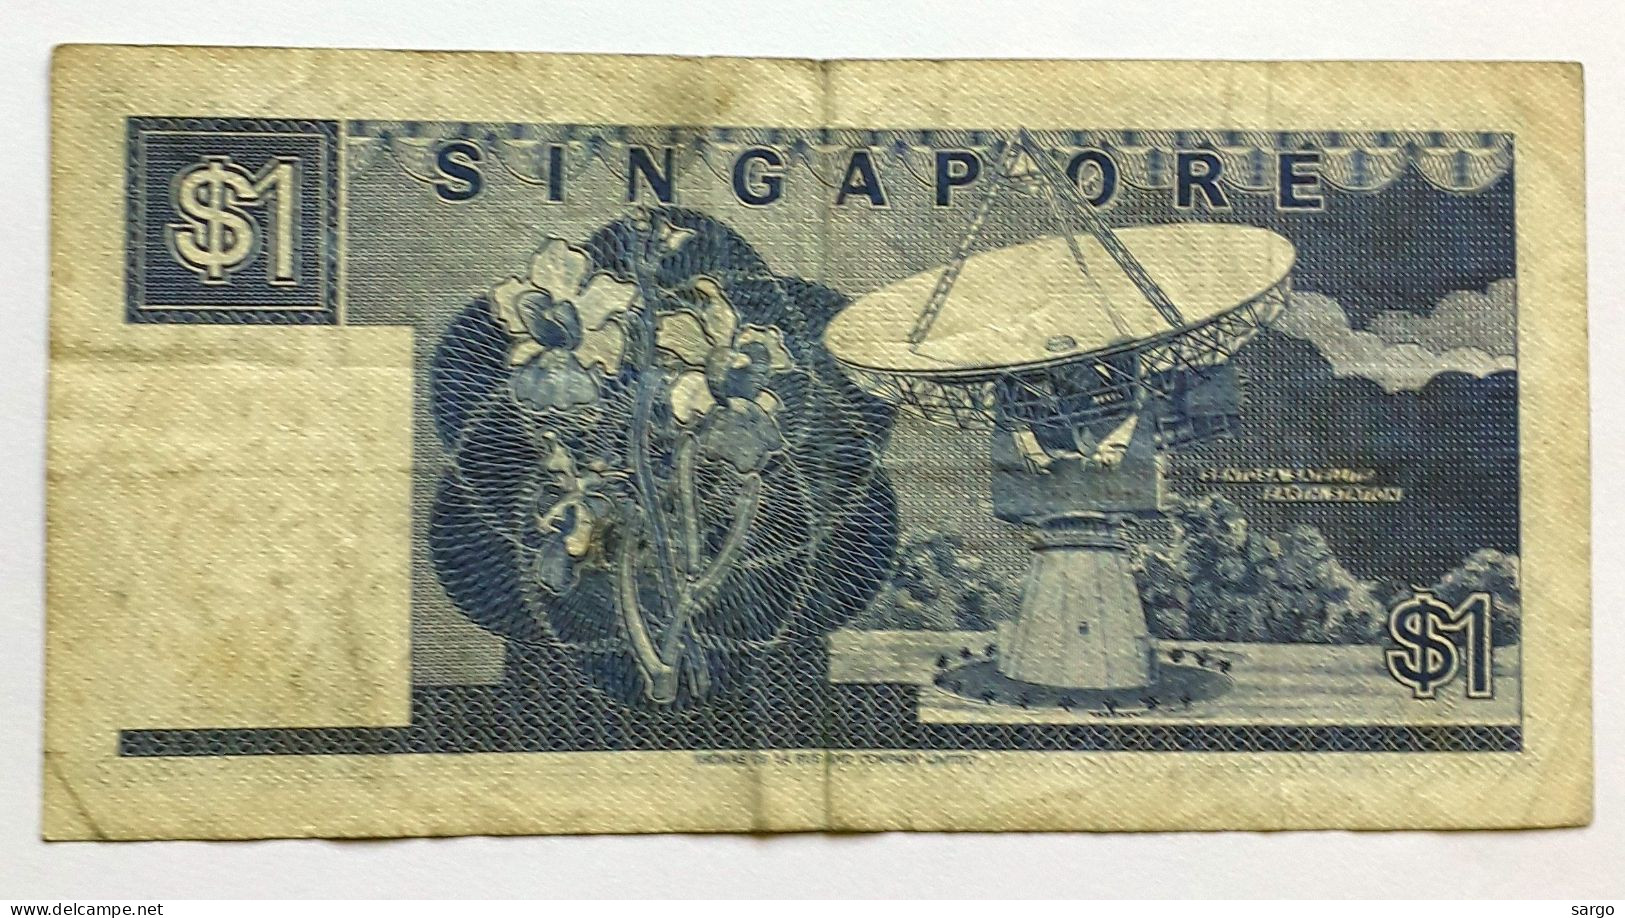 SINGAPORE 1 DOLLAR - P 18  (1987)  - CIRC-  BANKNOTES - PAPER MONEY - CARTAMONETA - - Singapur